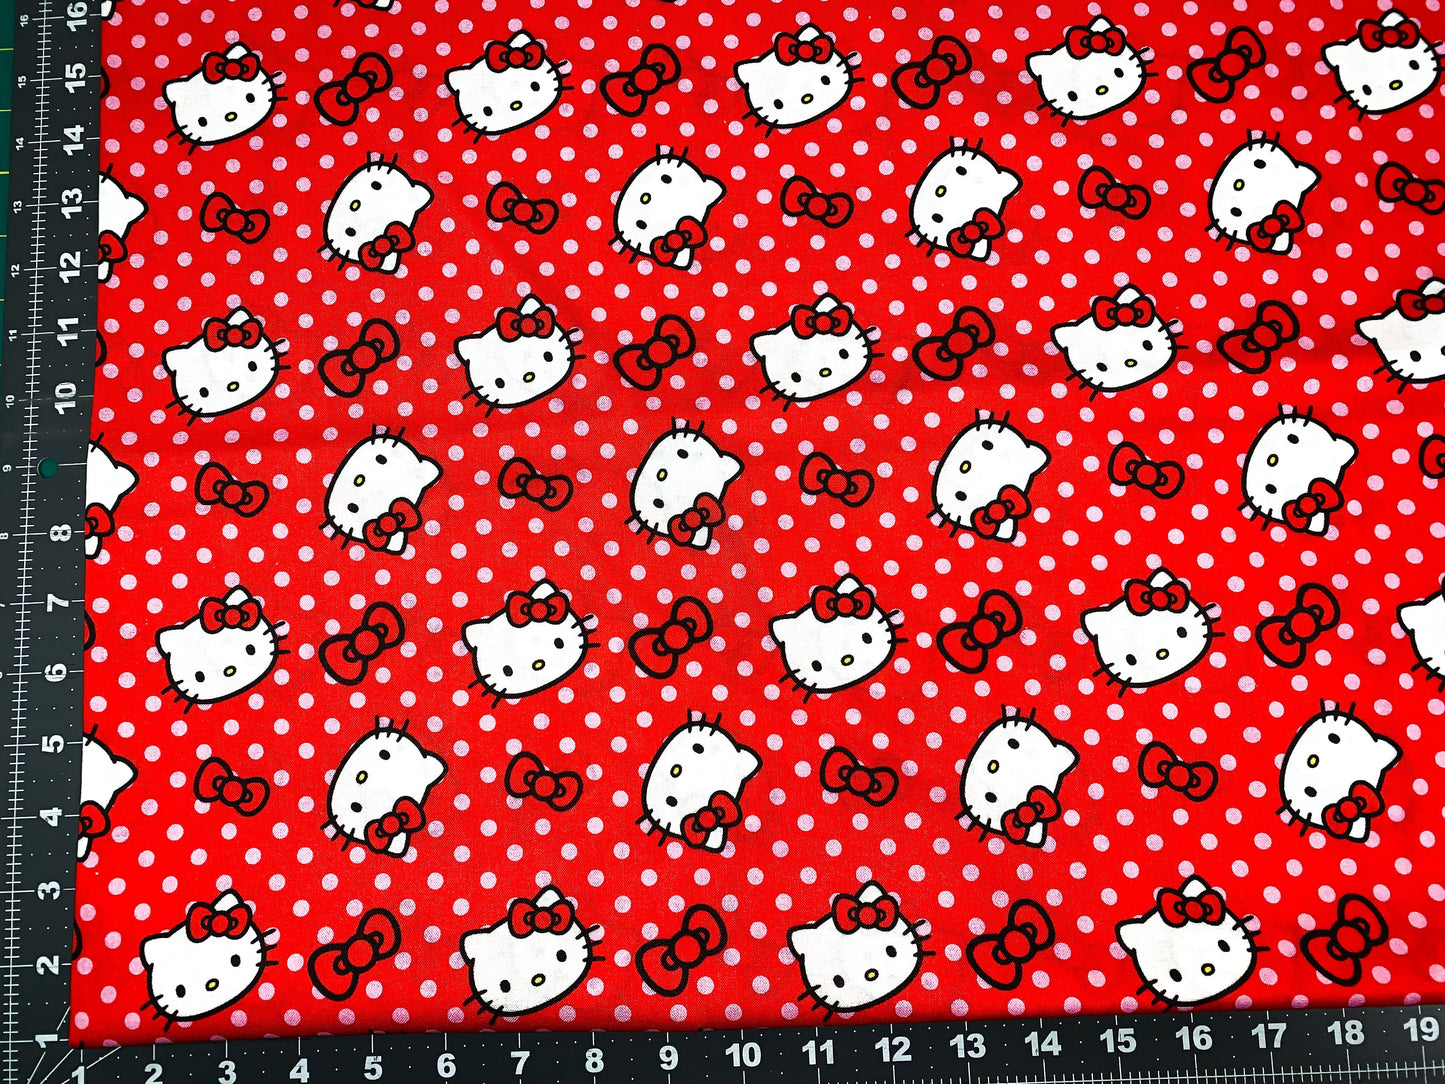 Polka Dot Hello Kitty fabric 77631 cat fabric